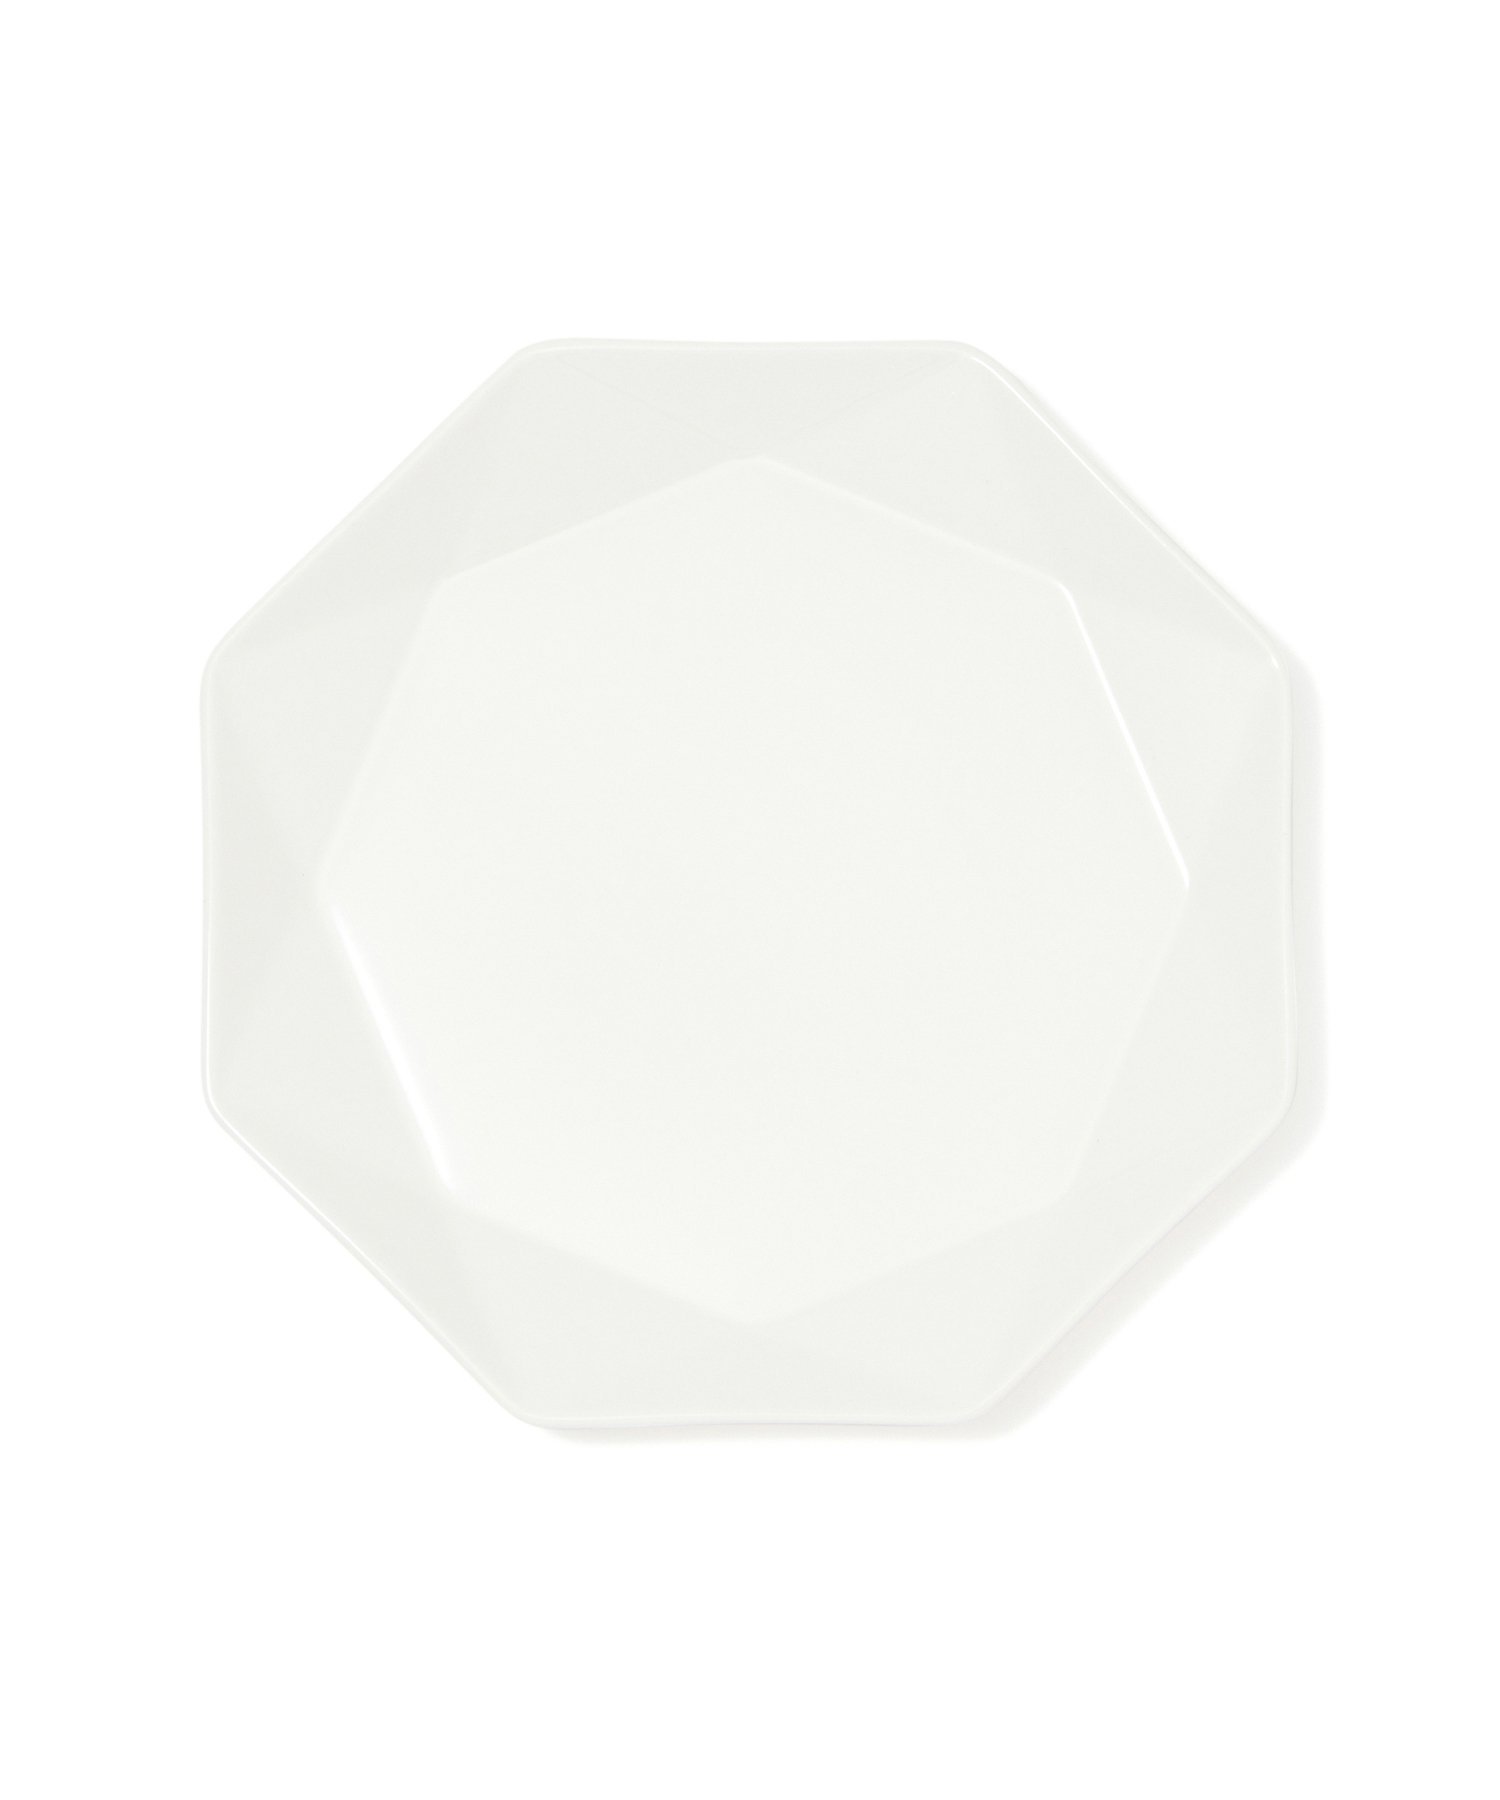 フランフラン 皿・プレート Francfranc ブランシェ プレート S オクタゴン フランフラン 食器・調理器具・キッチン用品 食器・皿 ホワイト